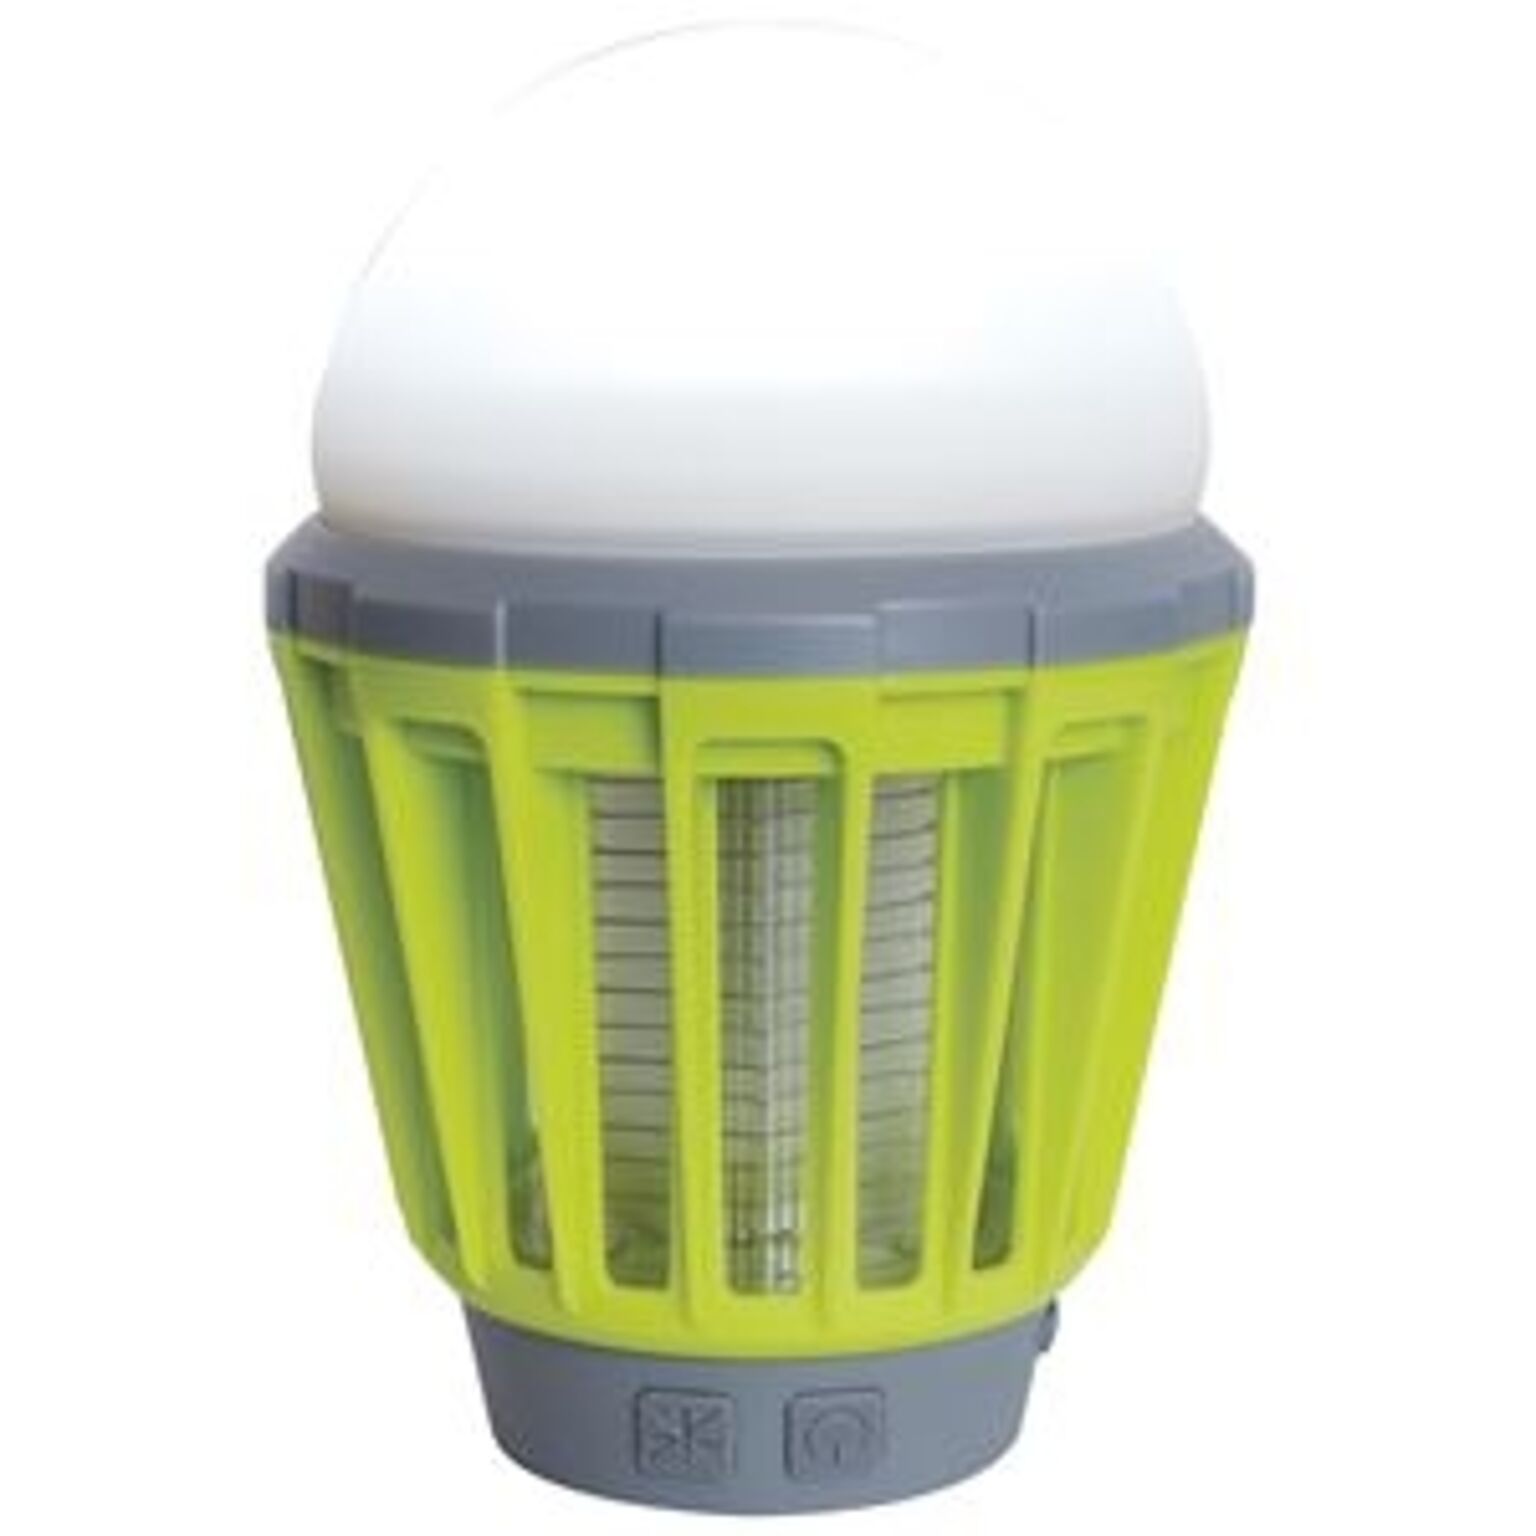 12個セット 殺虫機能付 LED ランタン/照明器具 ライムグリーン 防水 モスキートガード 『富士見産業 Field to Summit』